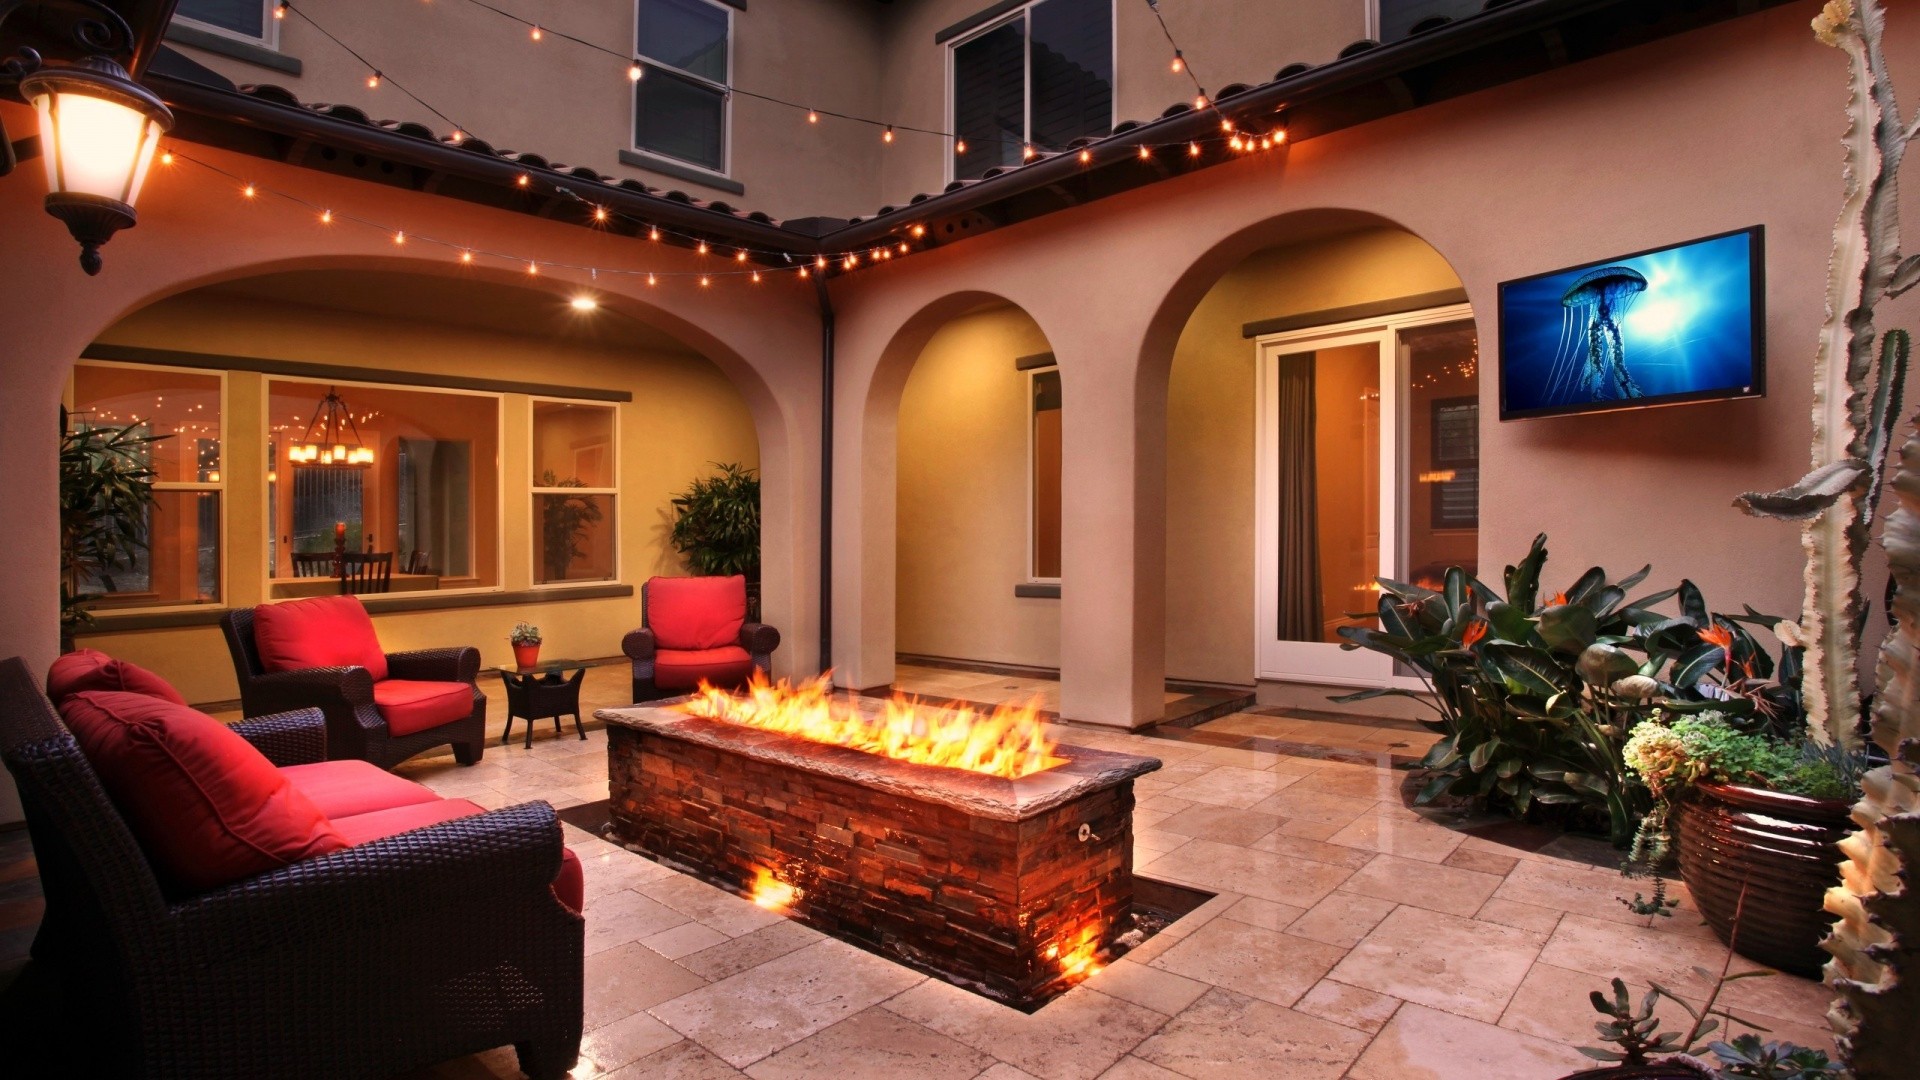 камин терасса fireplace terrace бесплатно